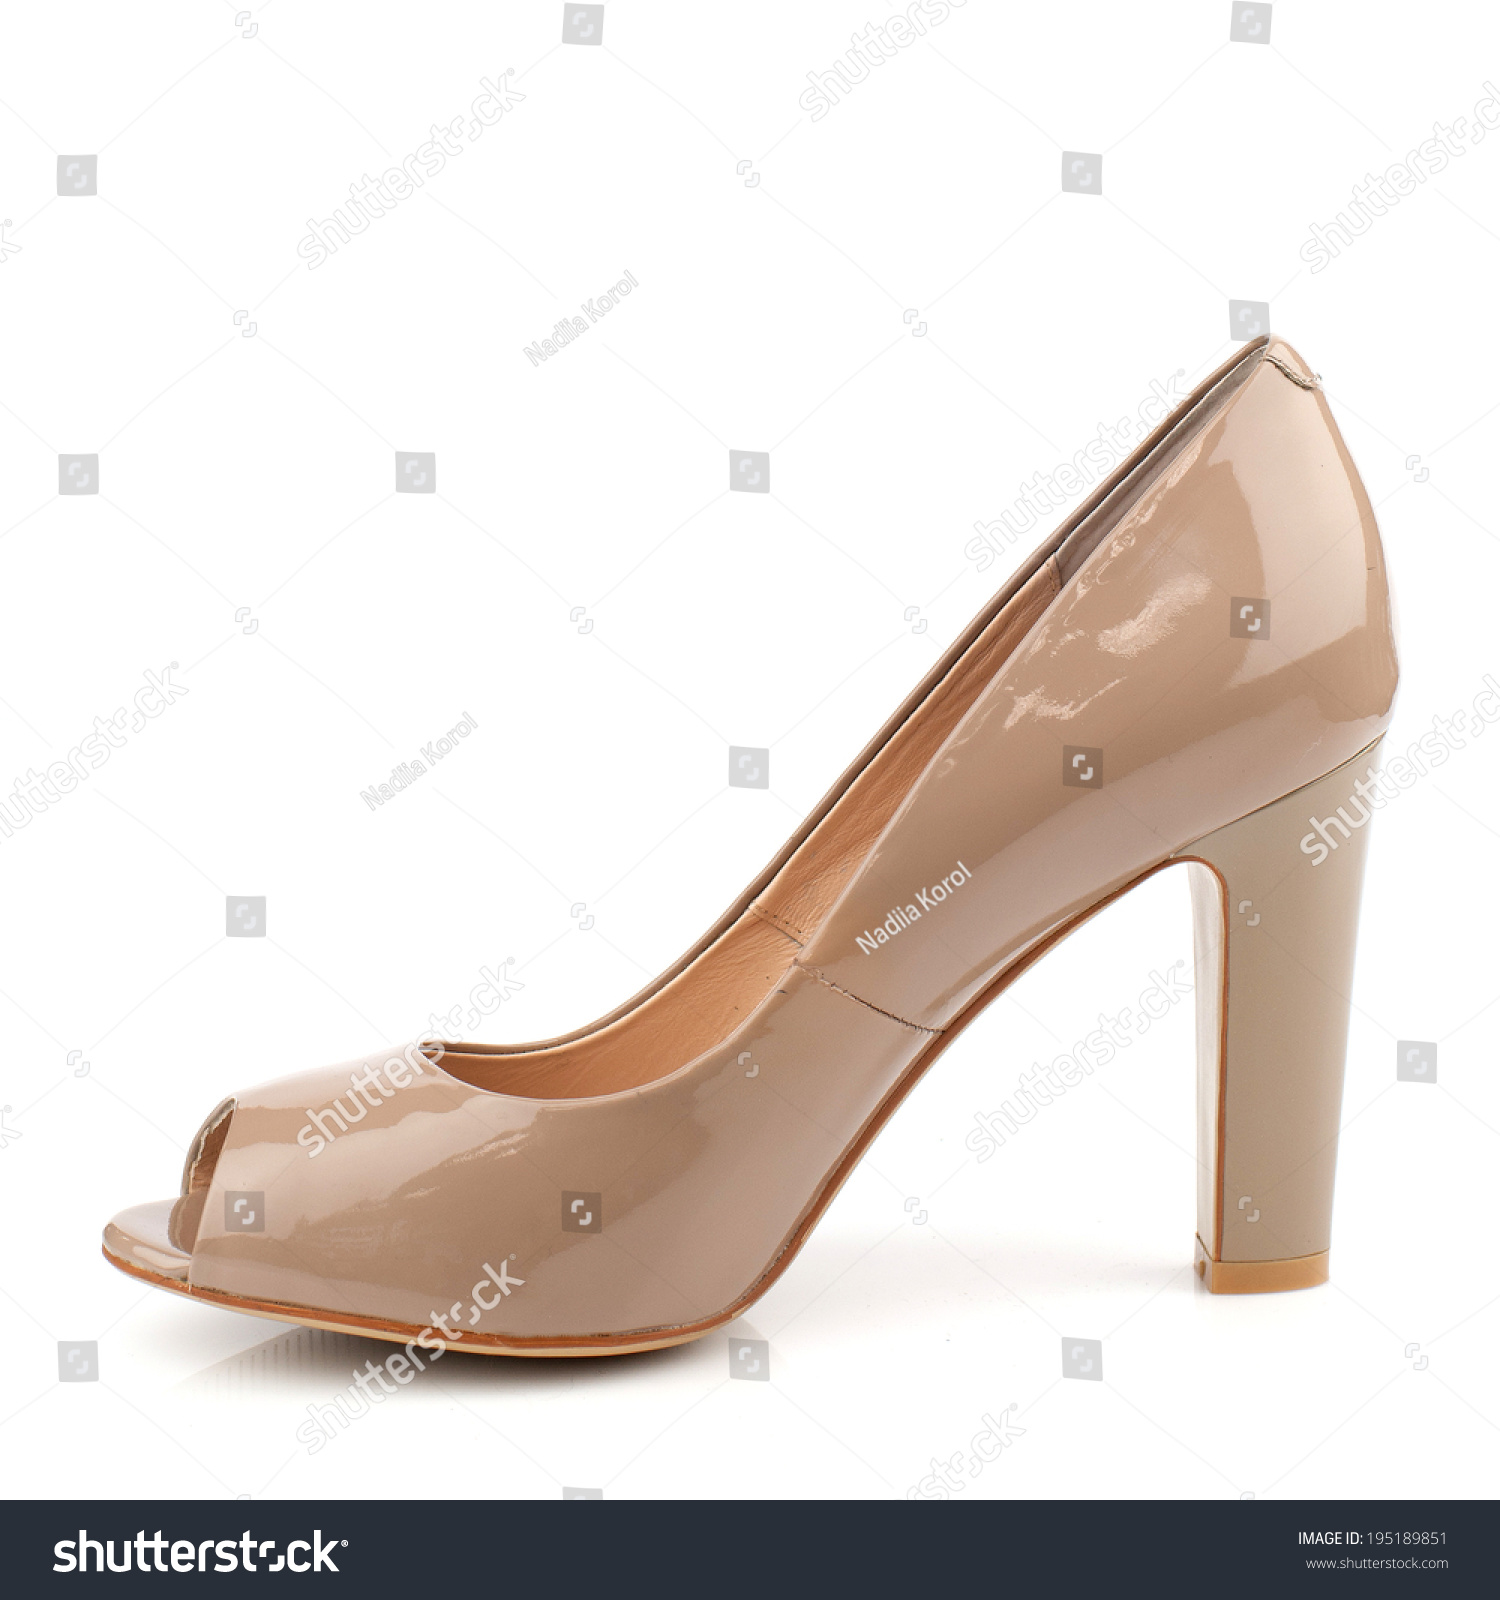 creamy heels